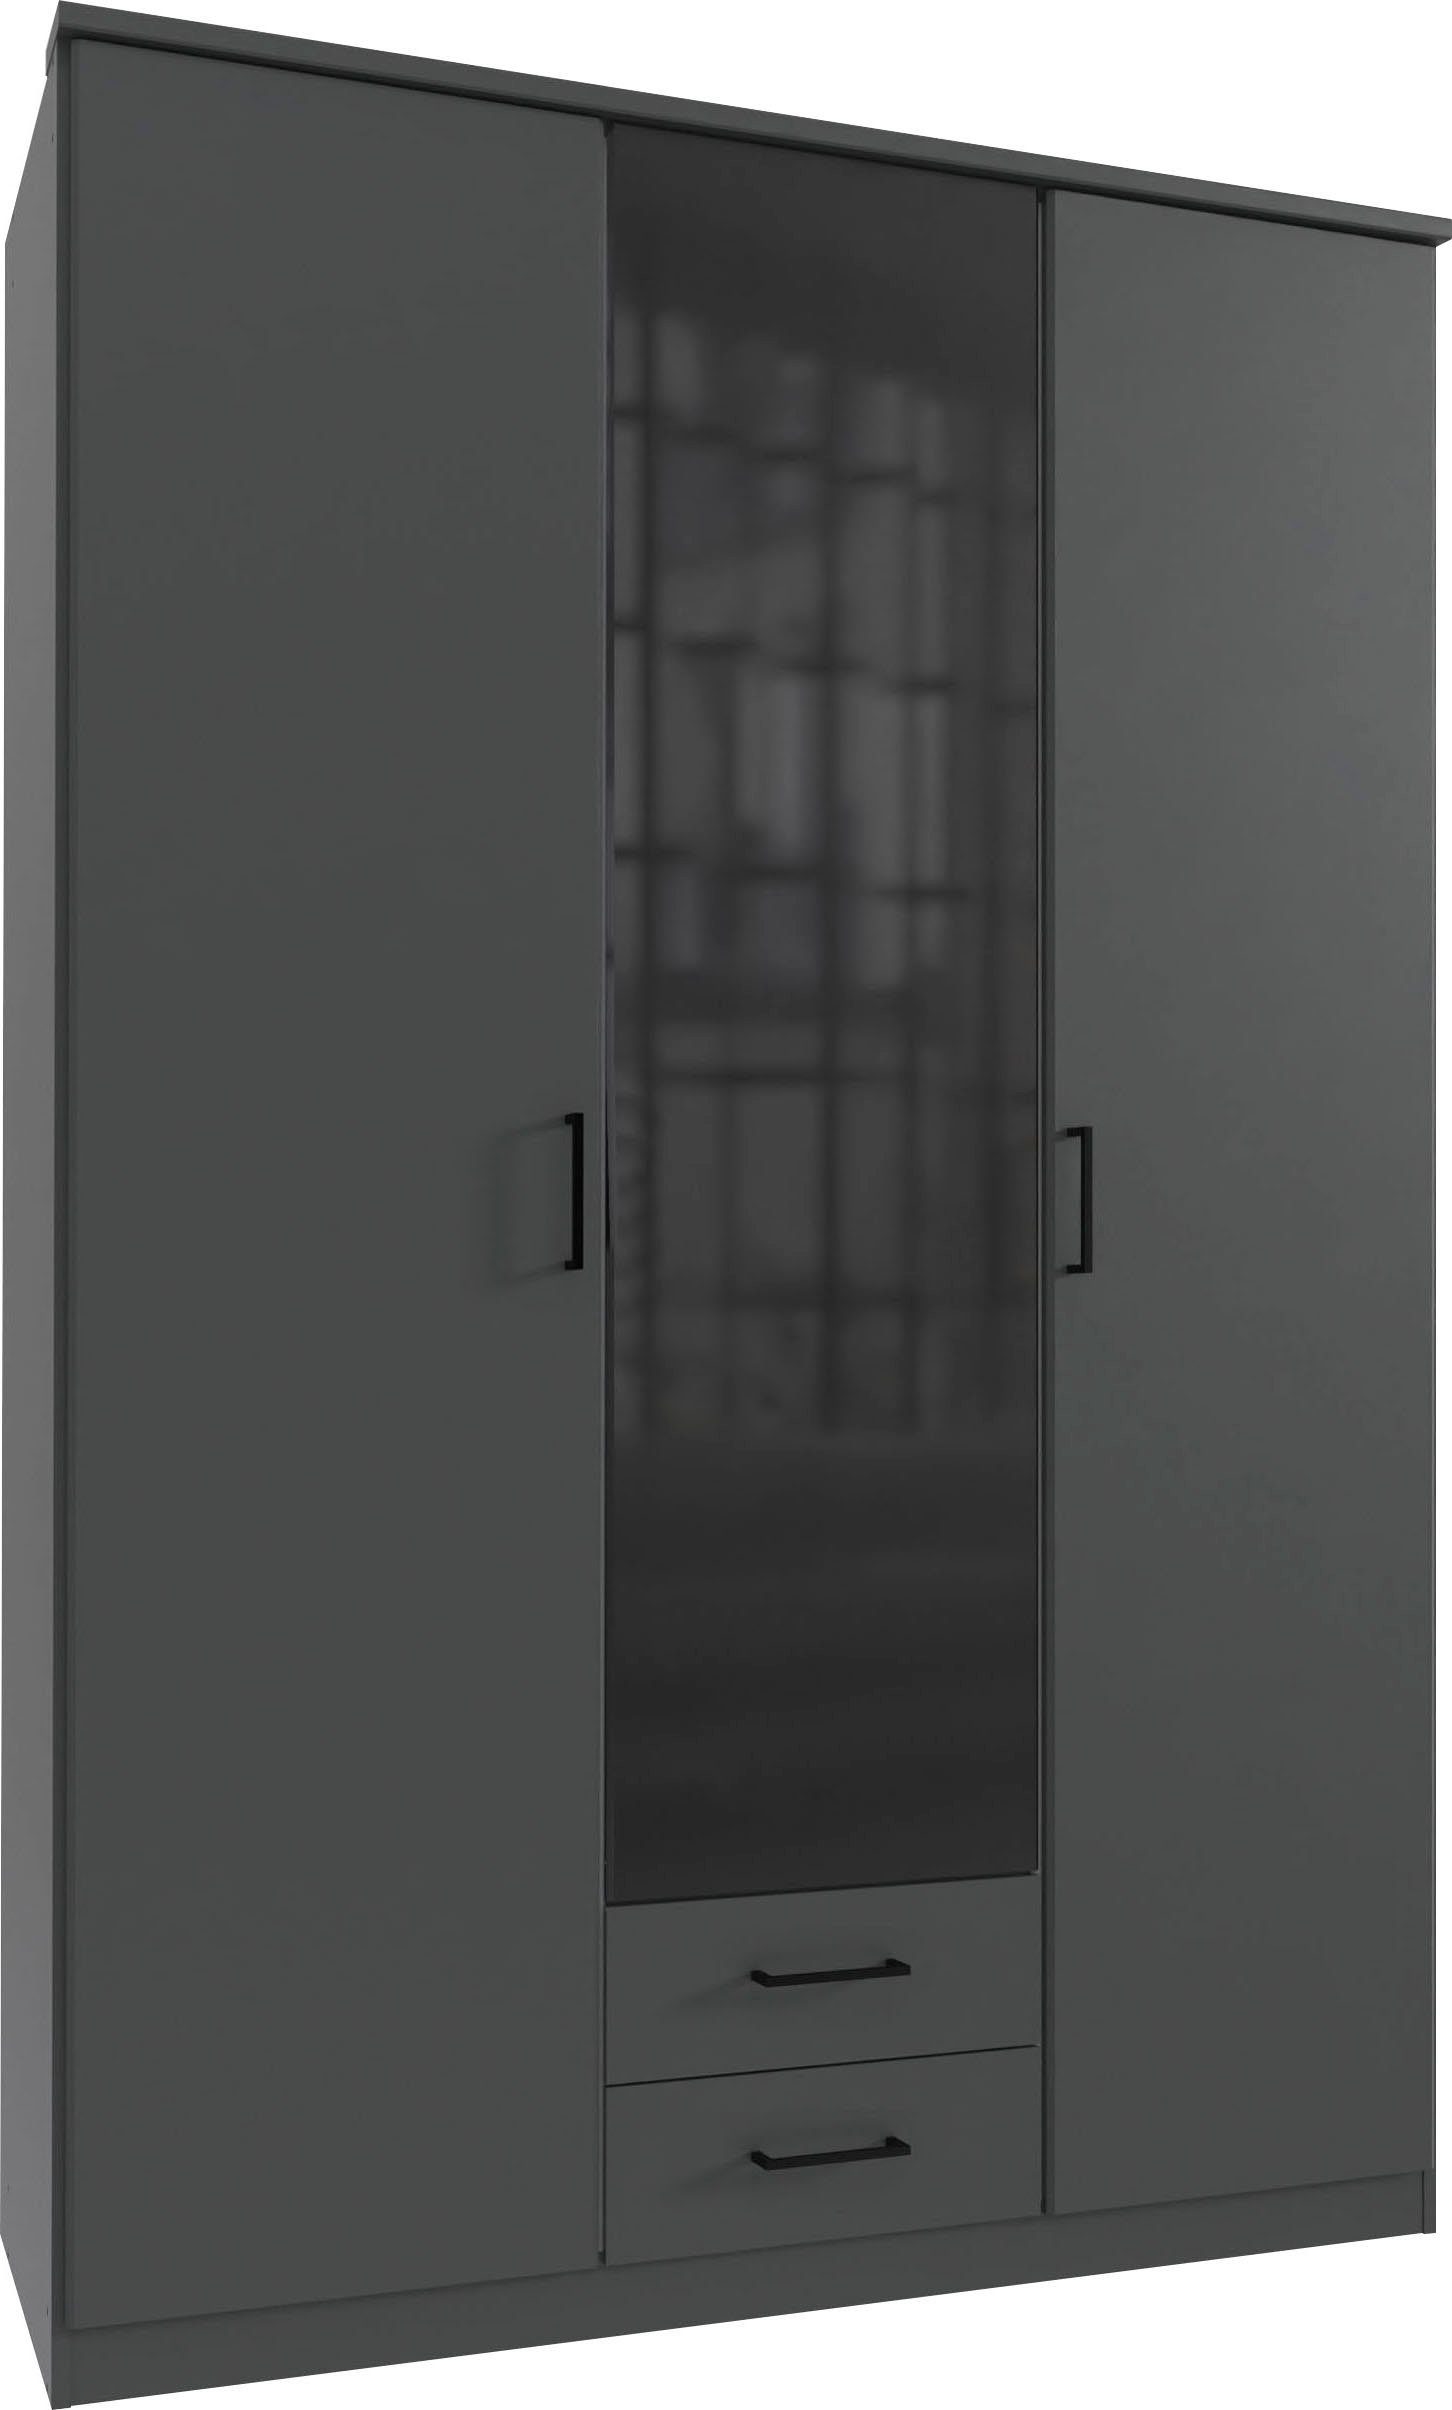 180cm breit Wimex Farbglas-Tür, mit oder Soest wahlweise 135 Drehtürenschrank